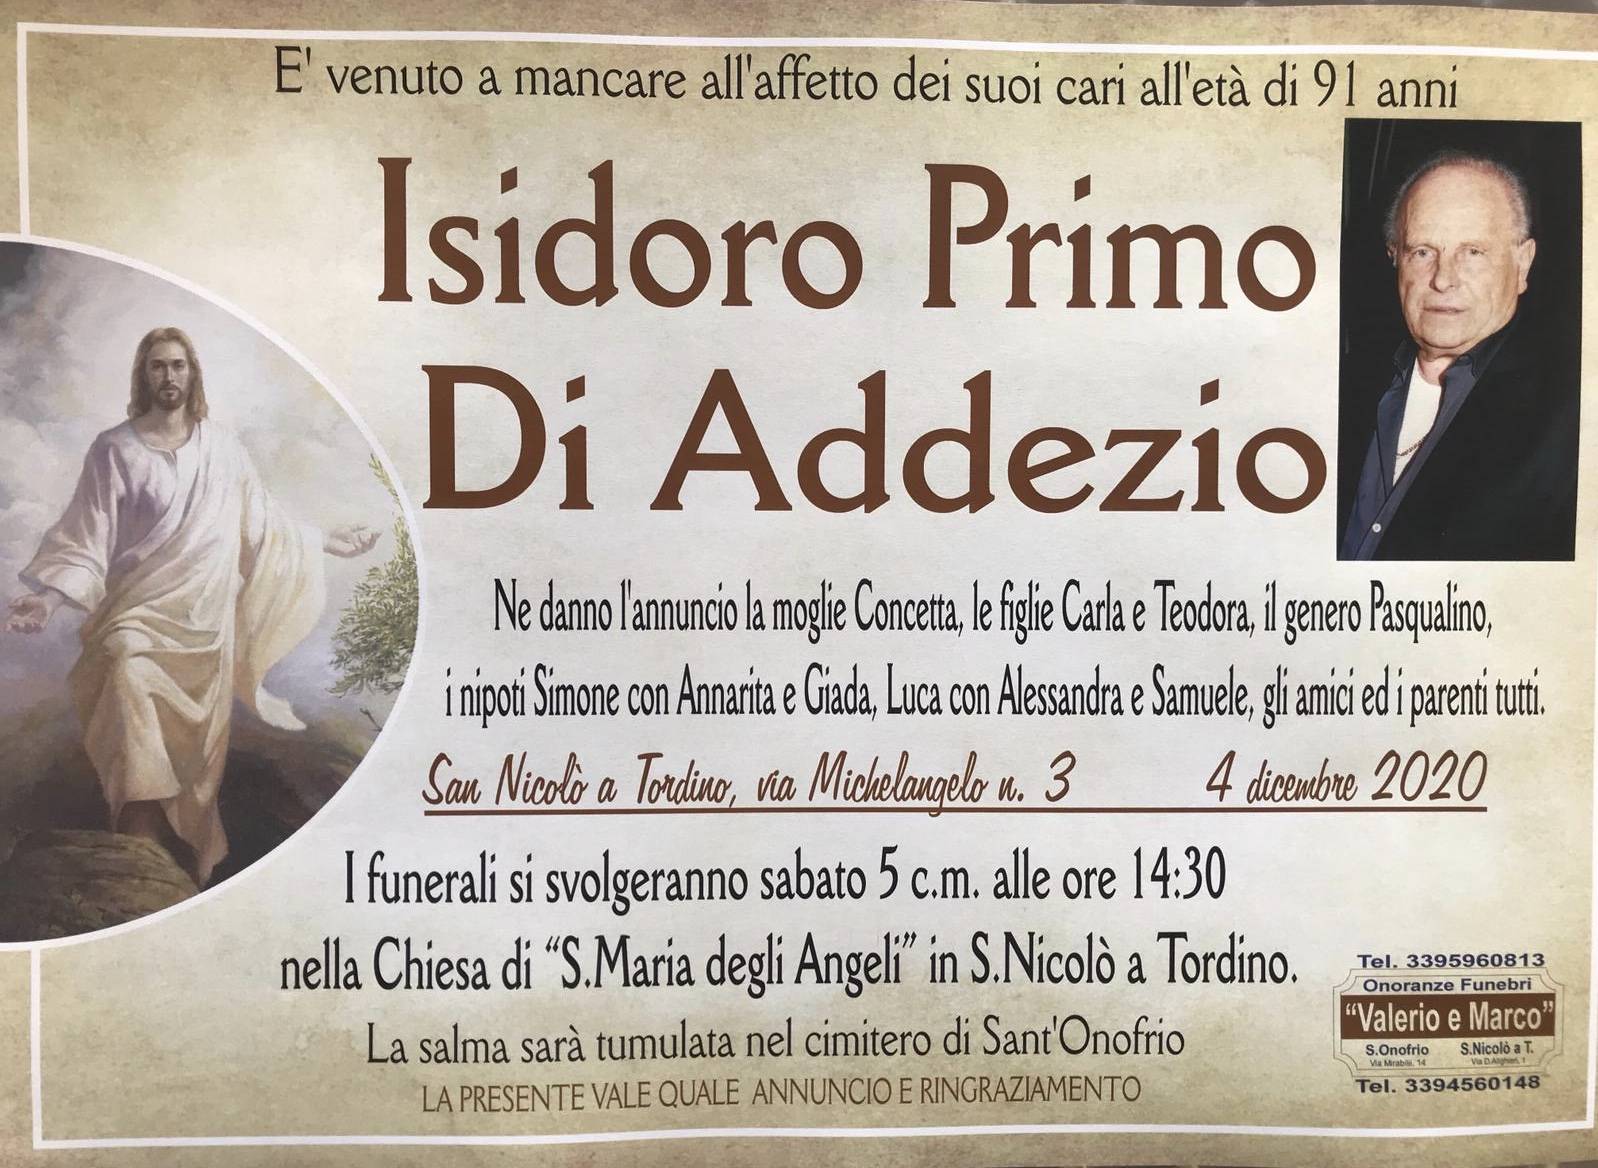 Isidoro Primo Di Addezio